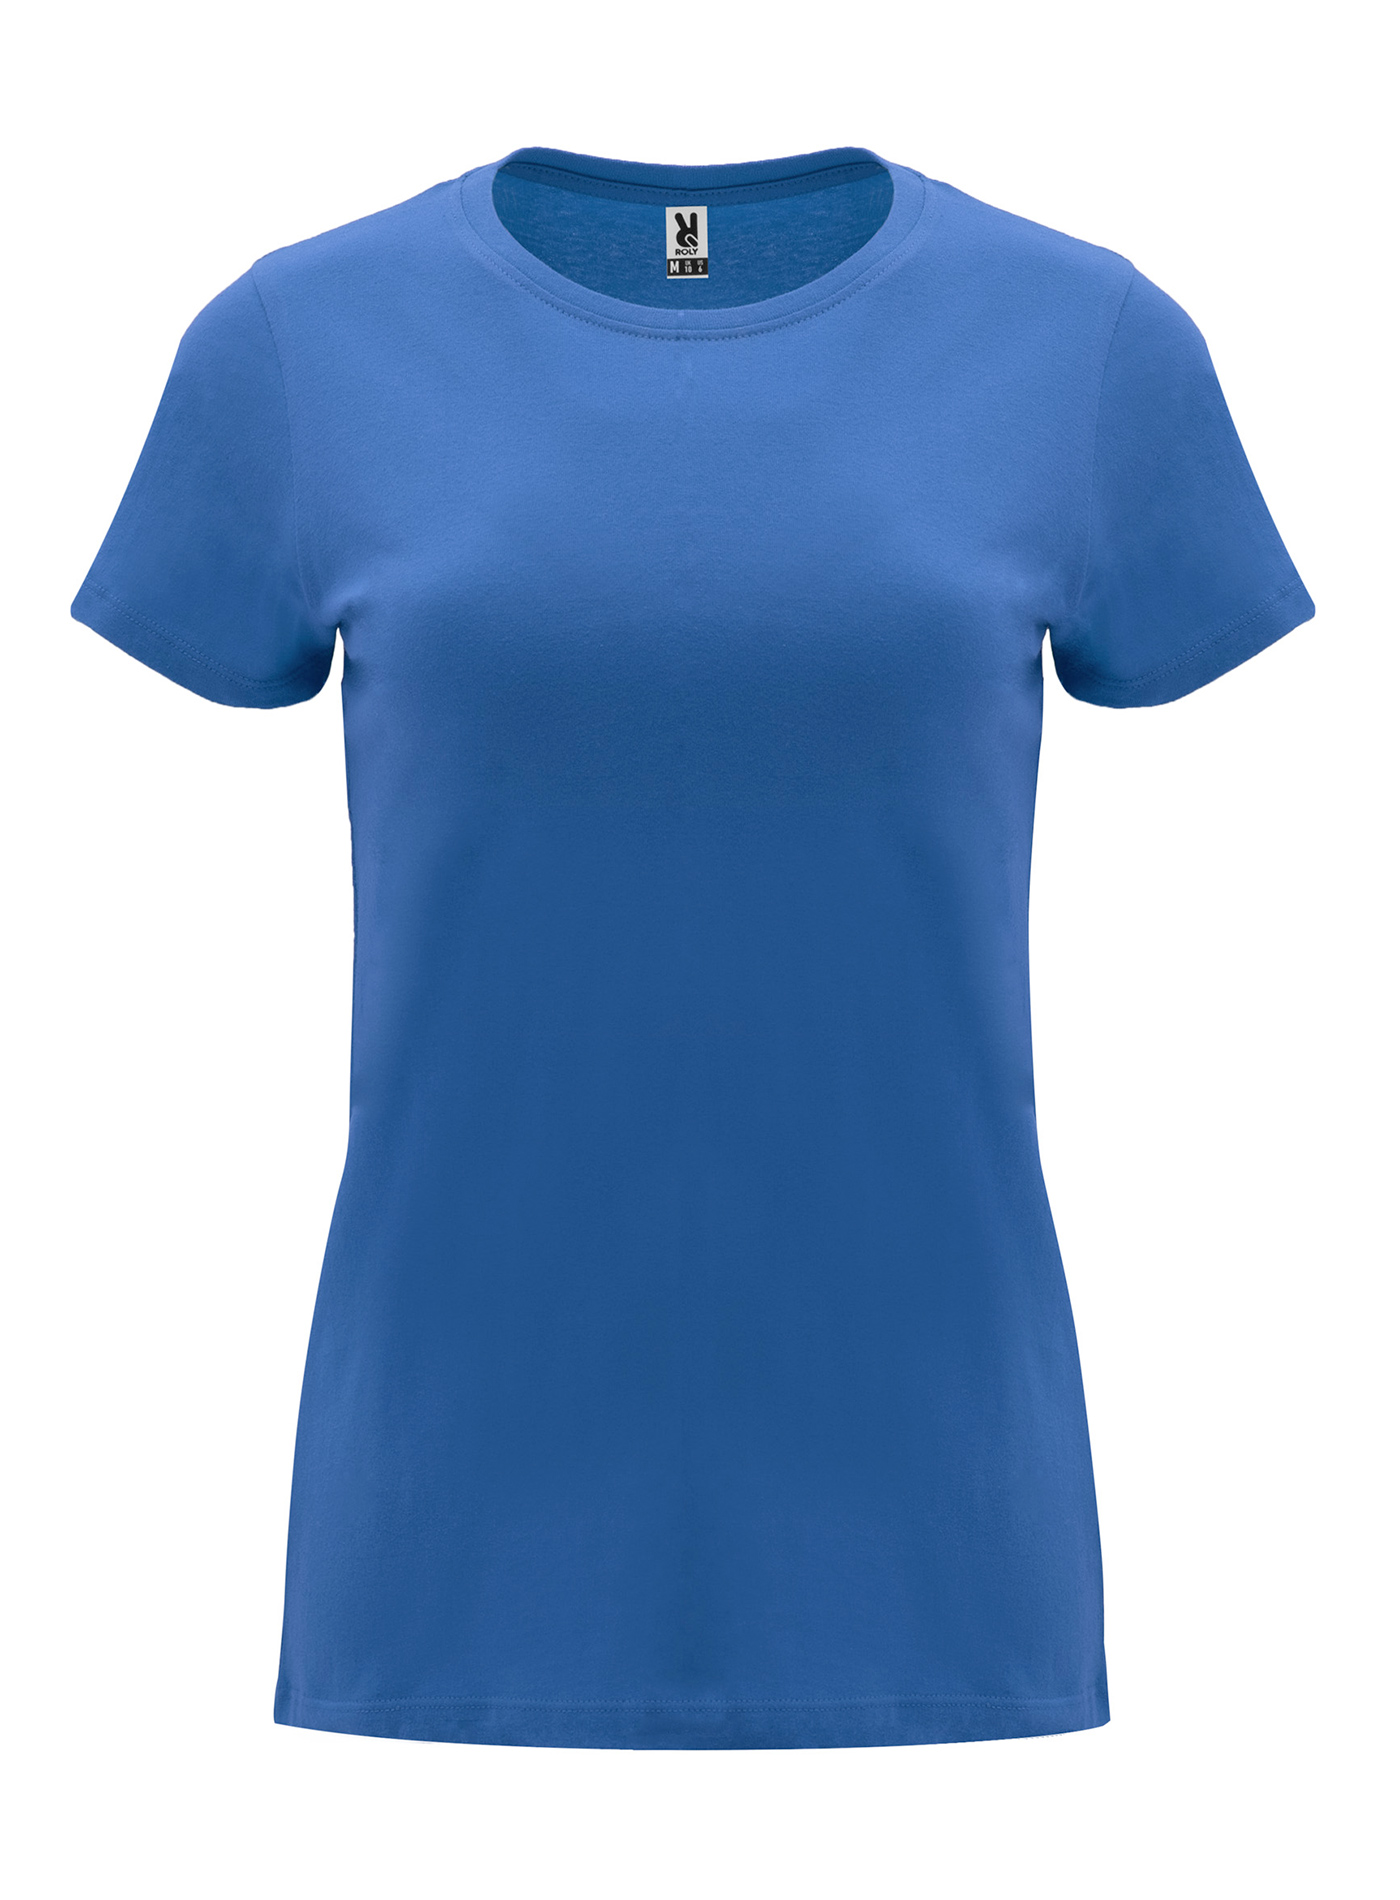 Dámské tričko Roly Capri - Královská modrá M